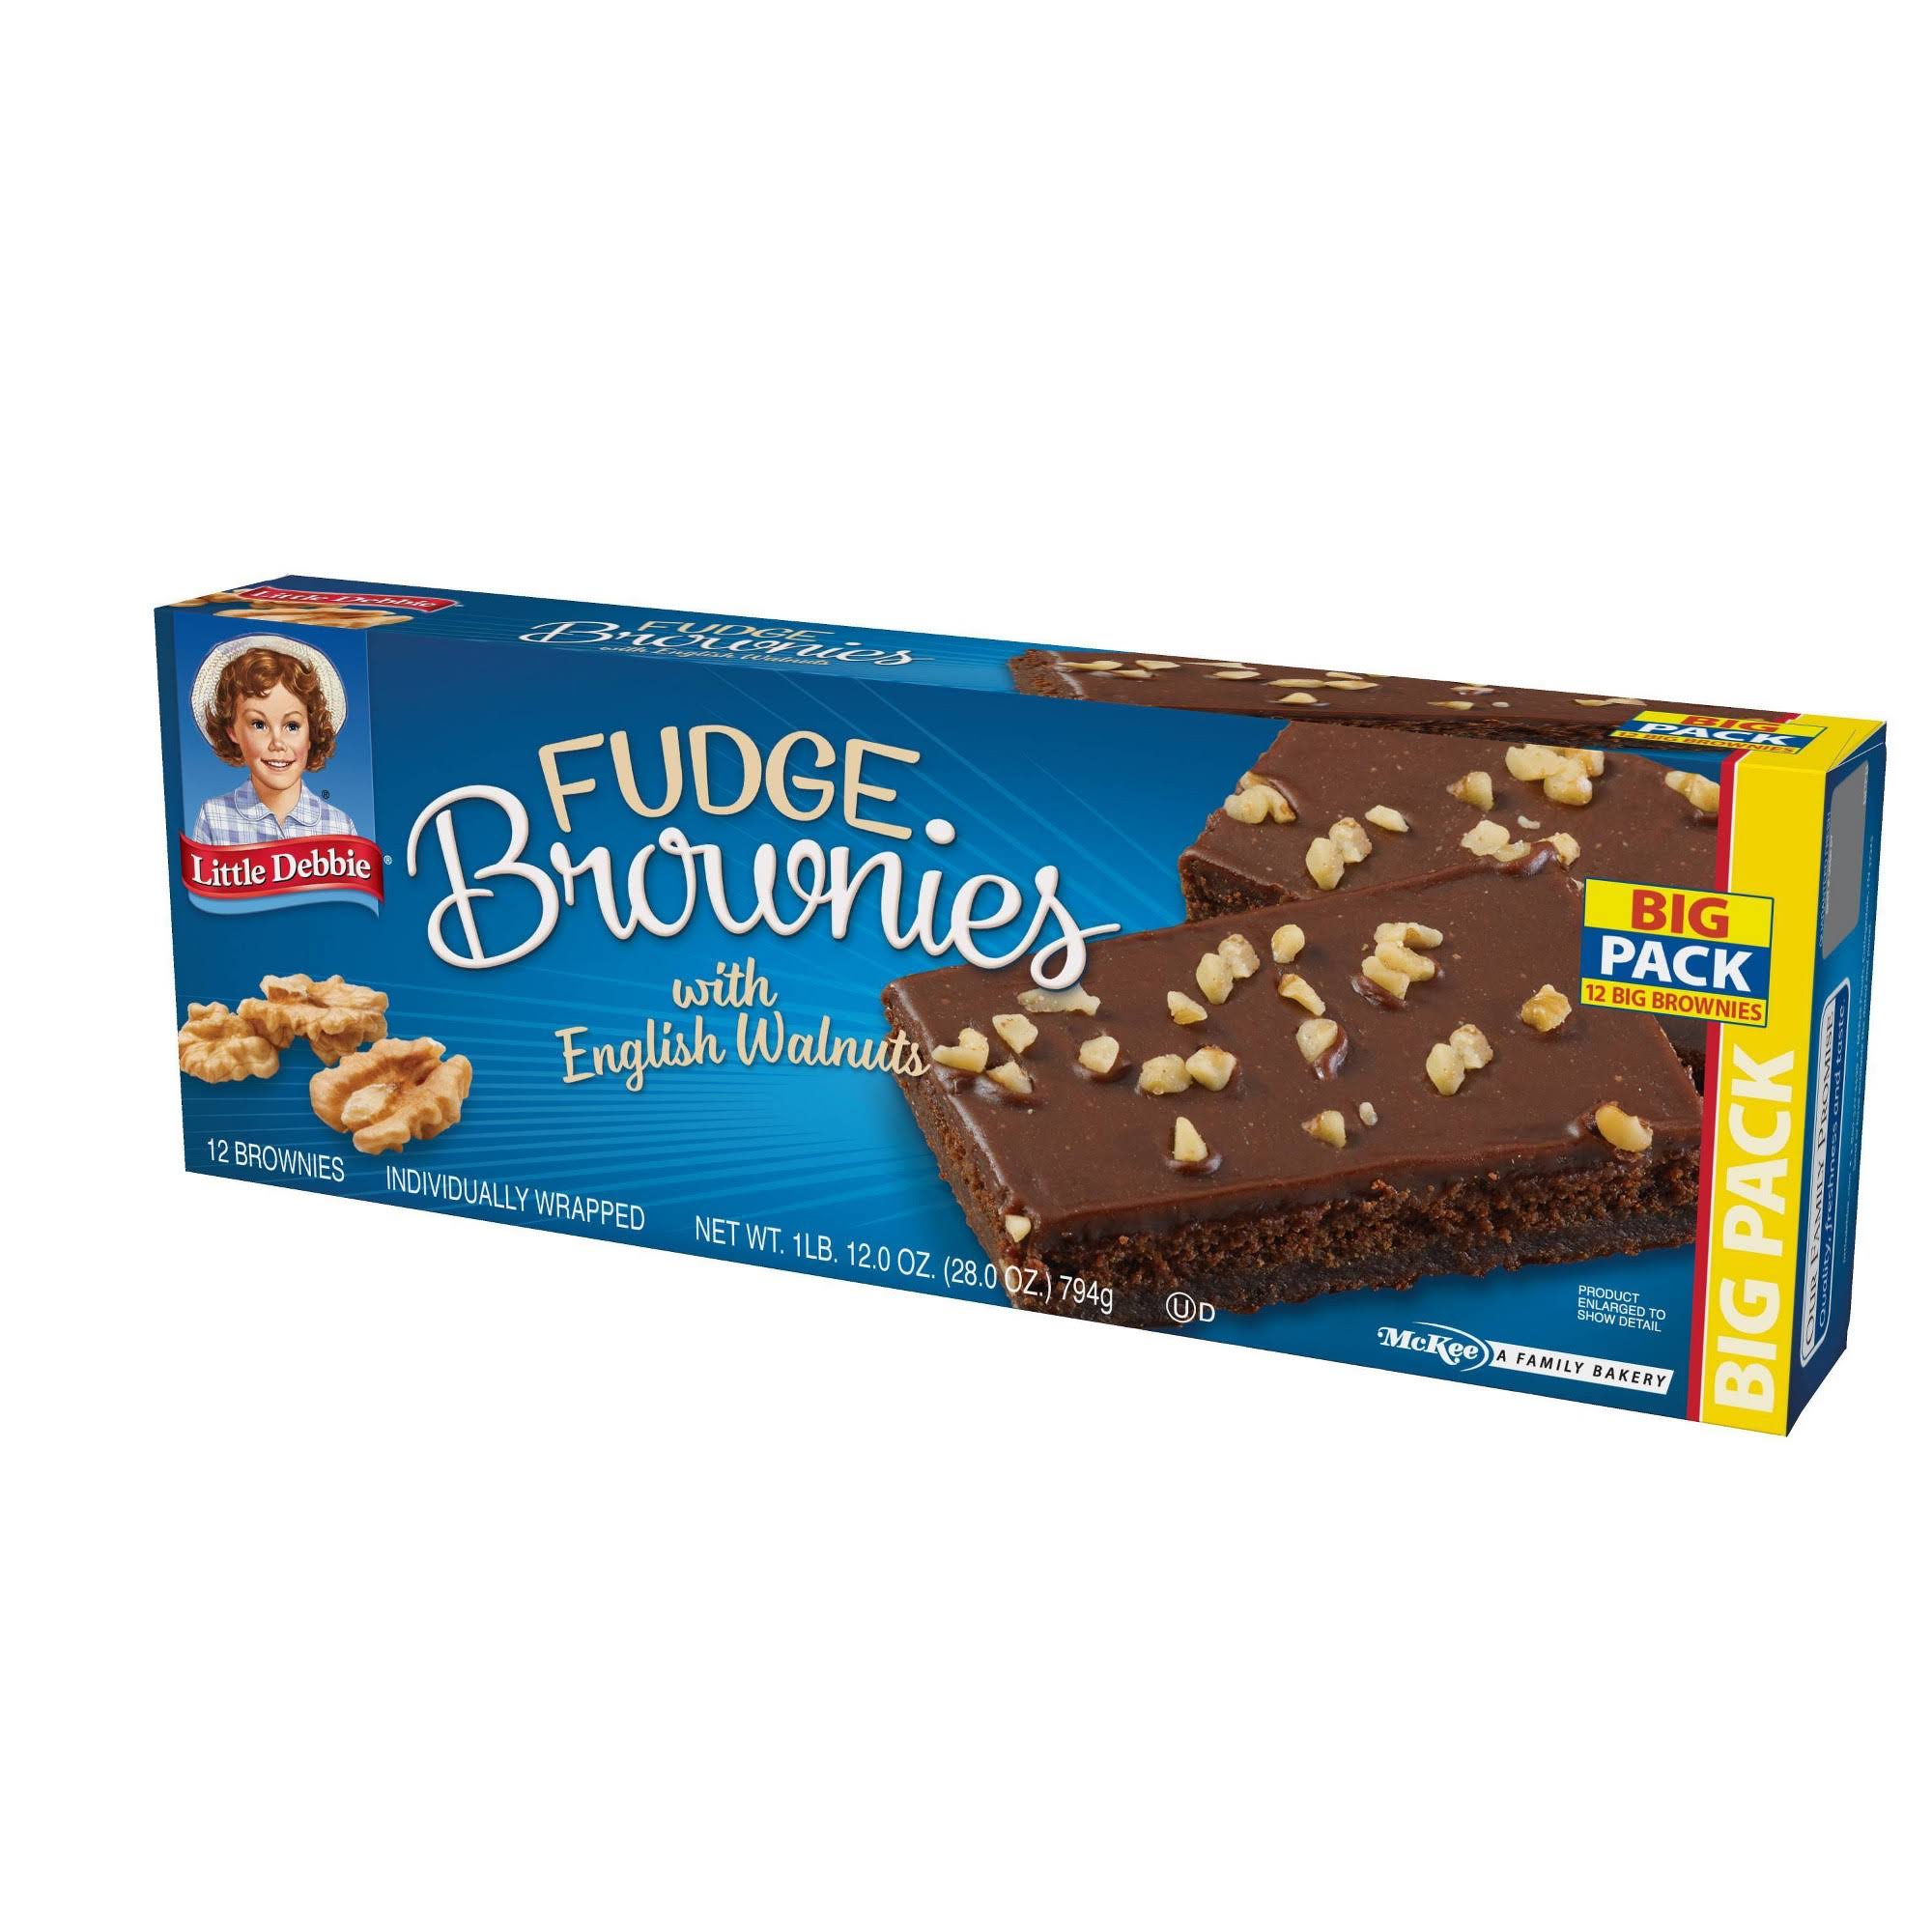 Little Debbie Brownies with English Walnuts, Fudge, Big Pack - 12 brownies, 28.0 oz